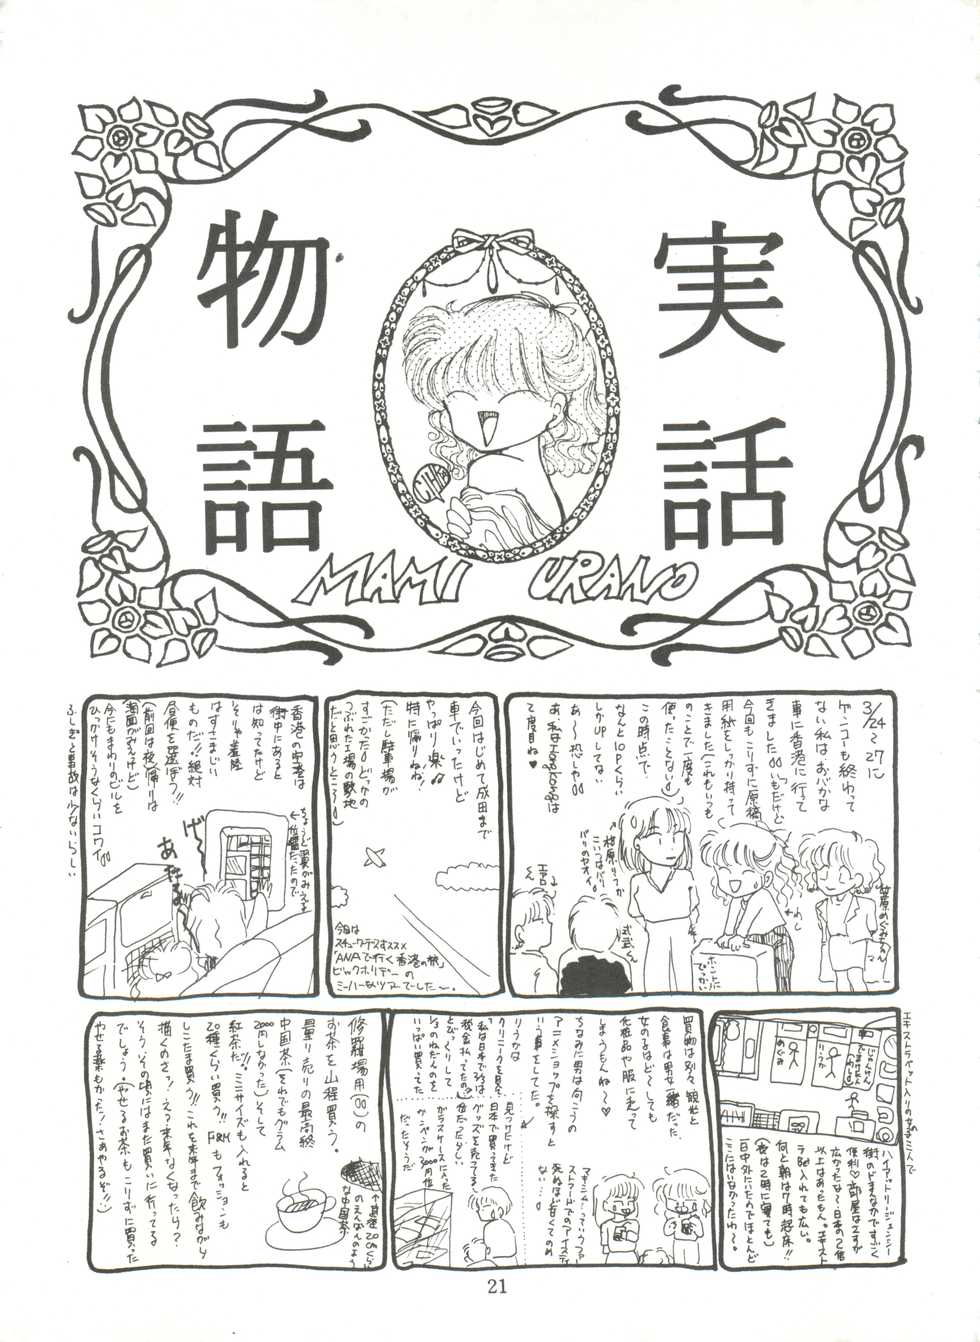 [TRAP (Urano Mami)] Tsukiyo no Tawamure 6 (Bishoujo Senshi Sailor Moon) - Page 21